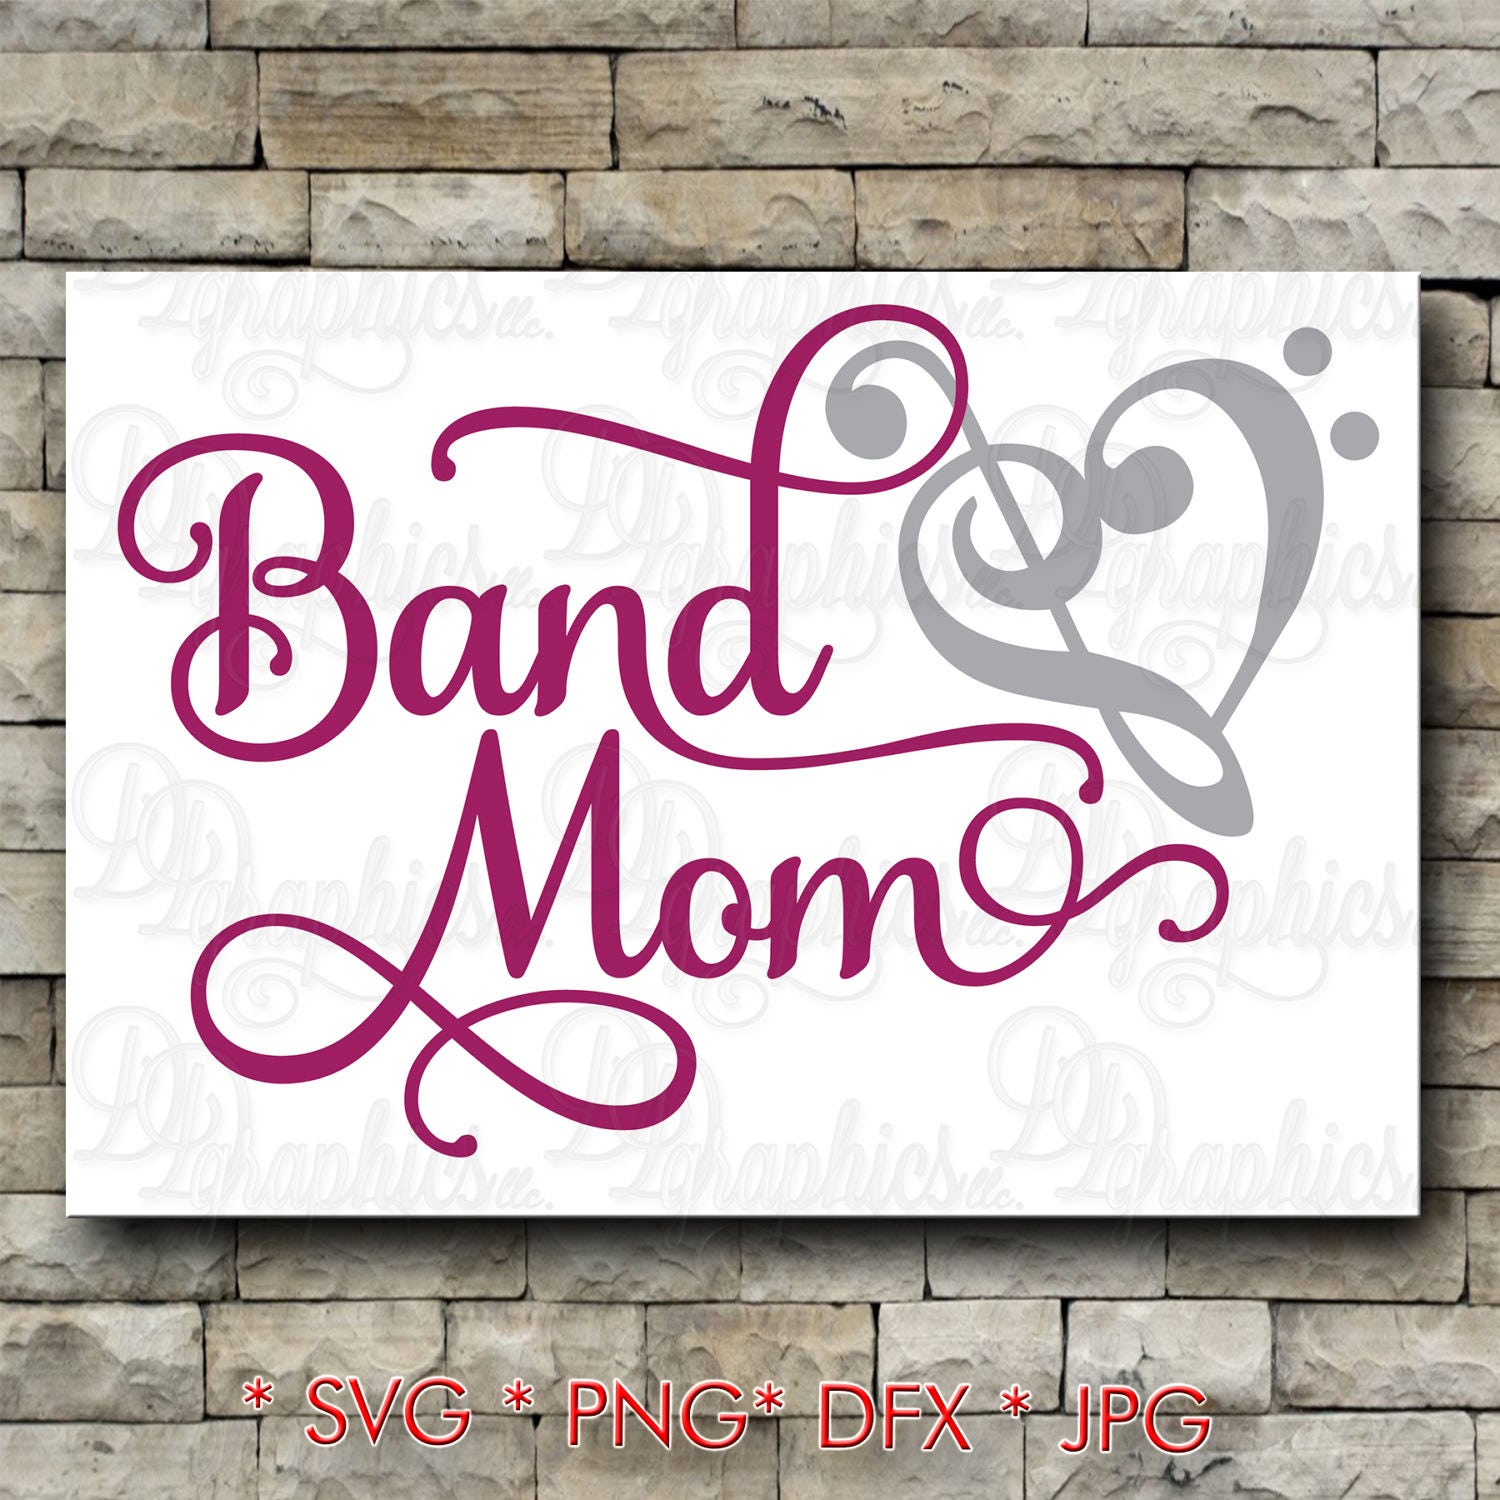 Band Mom/ SVG File/ Jpg Dxf Png/Digital Files